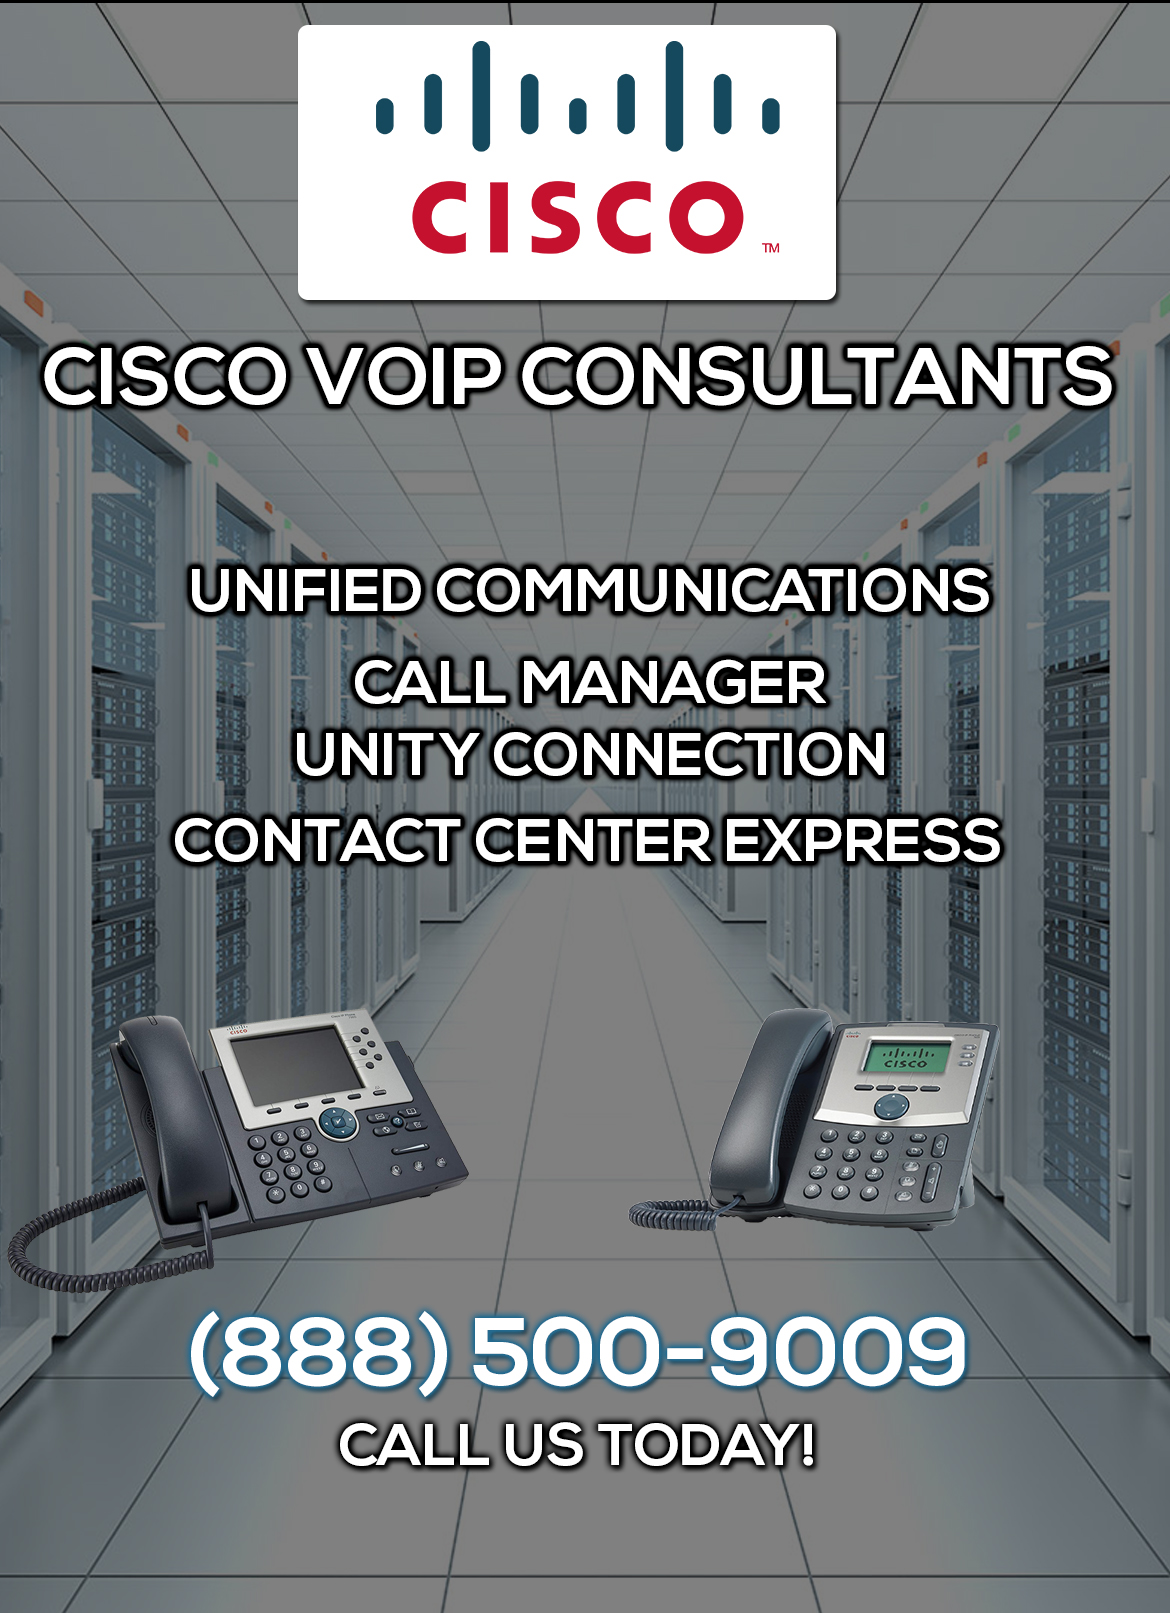 Cisco VoIP Consultants Culver City